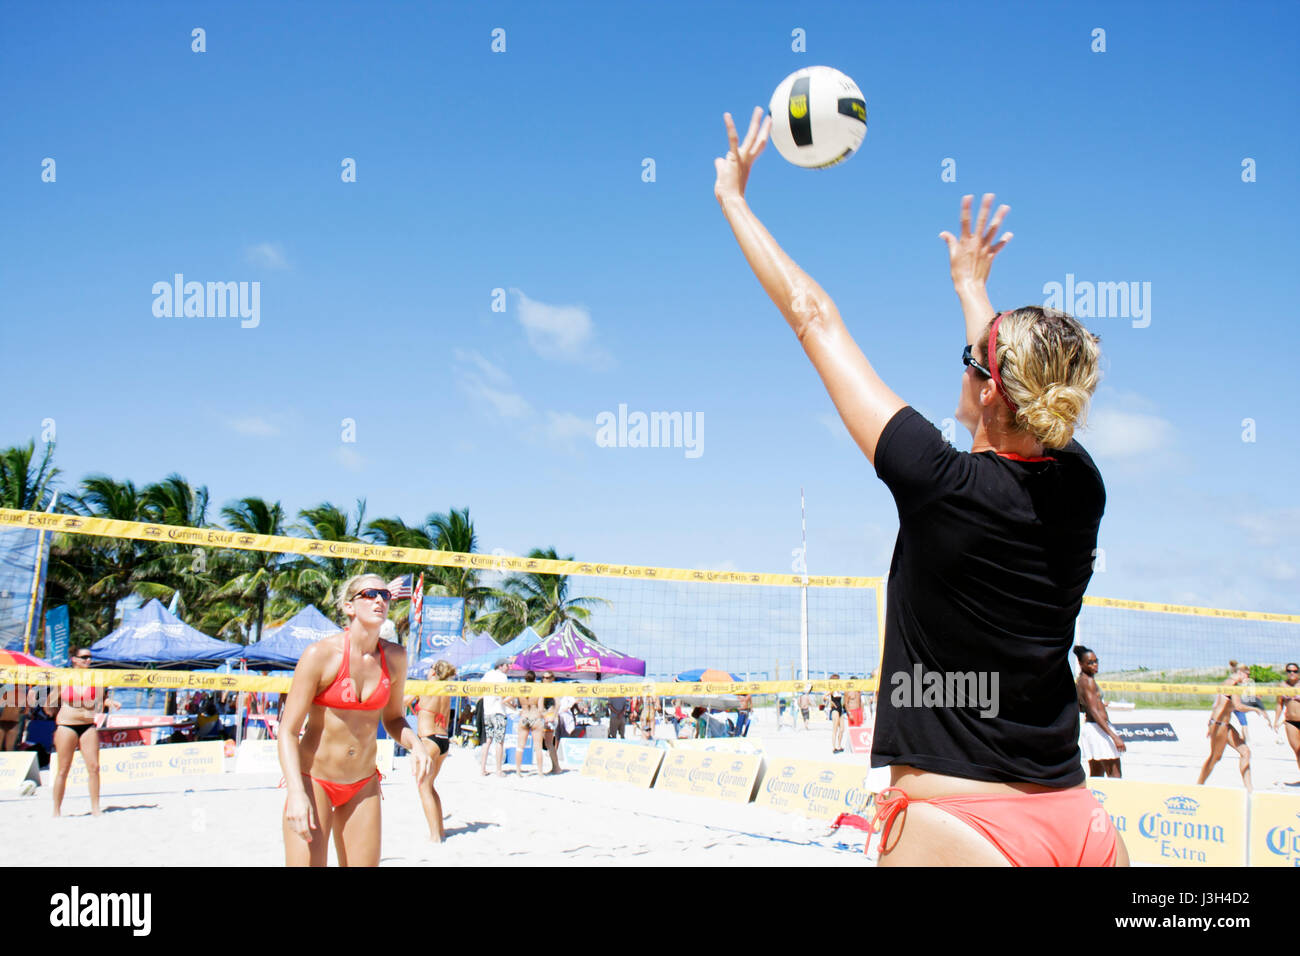 Miami Beach Florida, Lummus Park, gara di Beach volley, pratica, riscaldamento, donna donna donne, palla, bikini, sabbia, rete, sport, atleta, fitness, abbronzatura, su Foto Stock